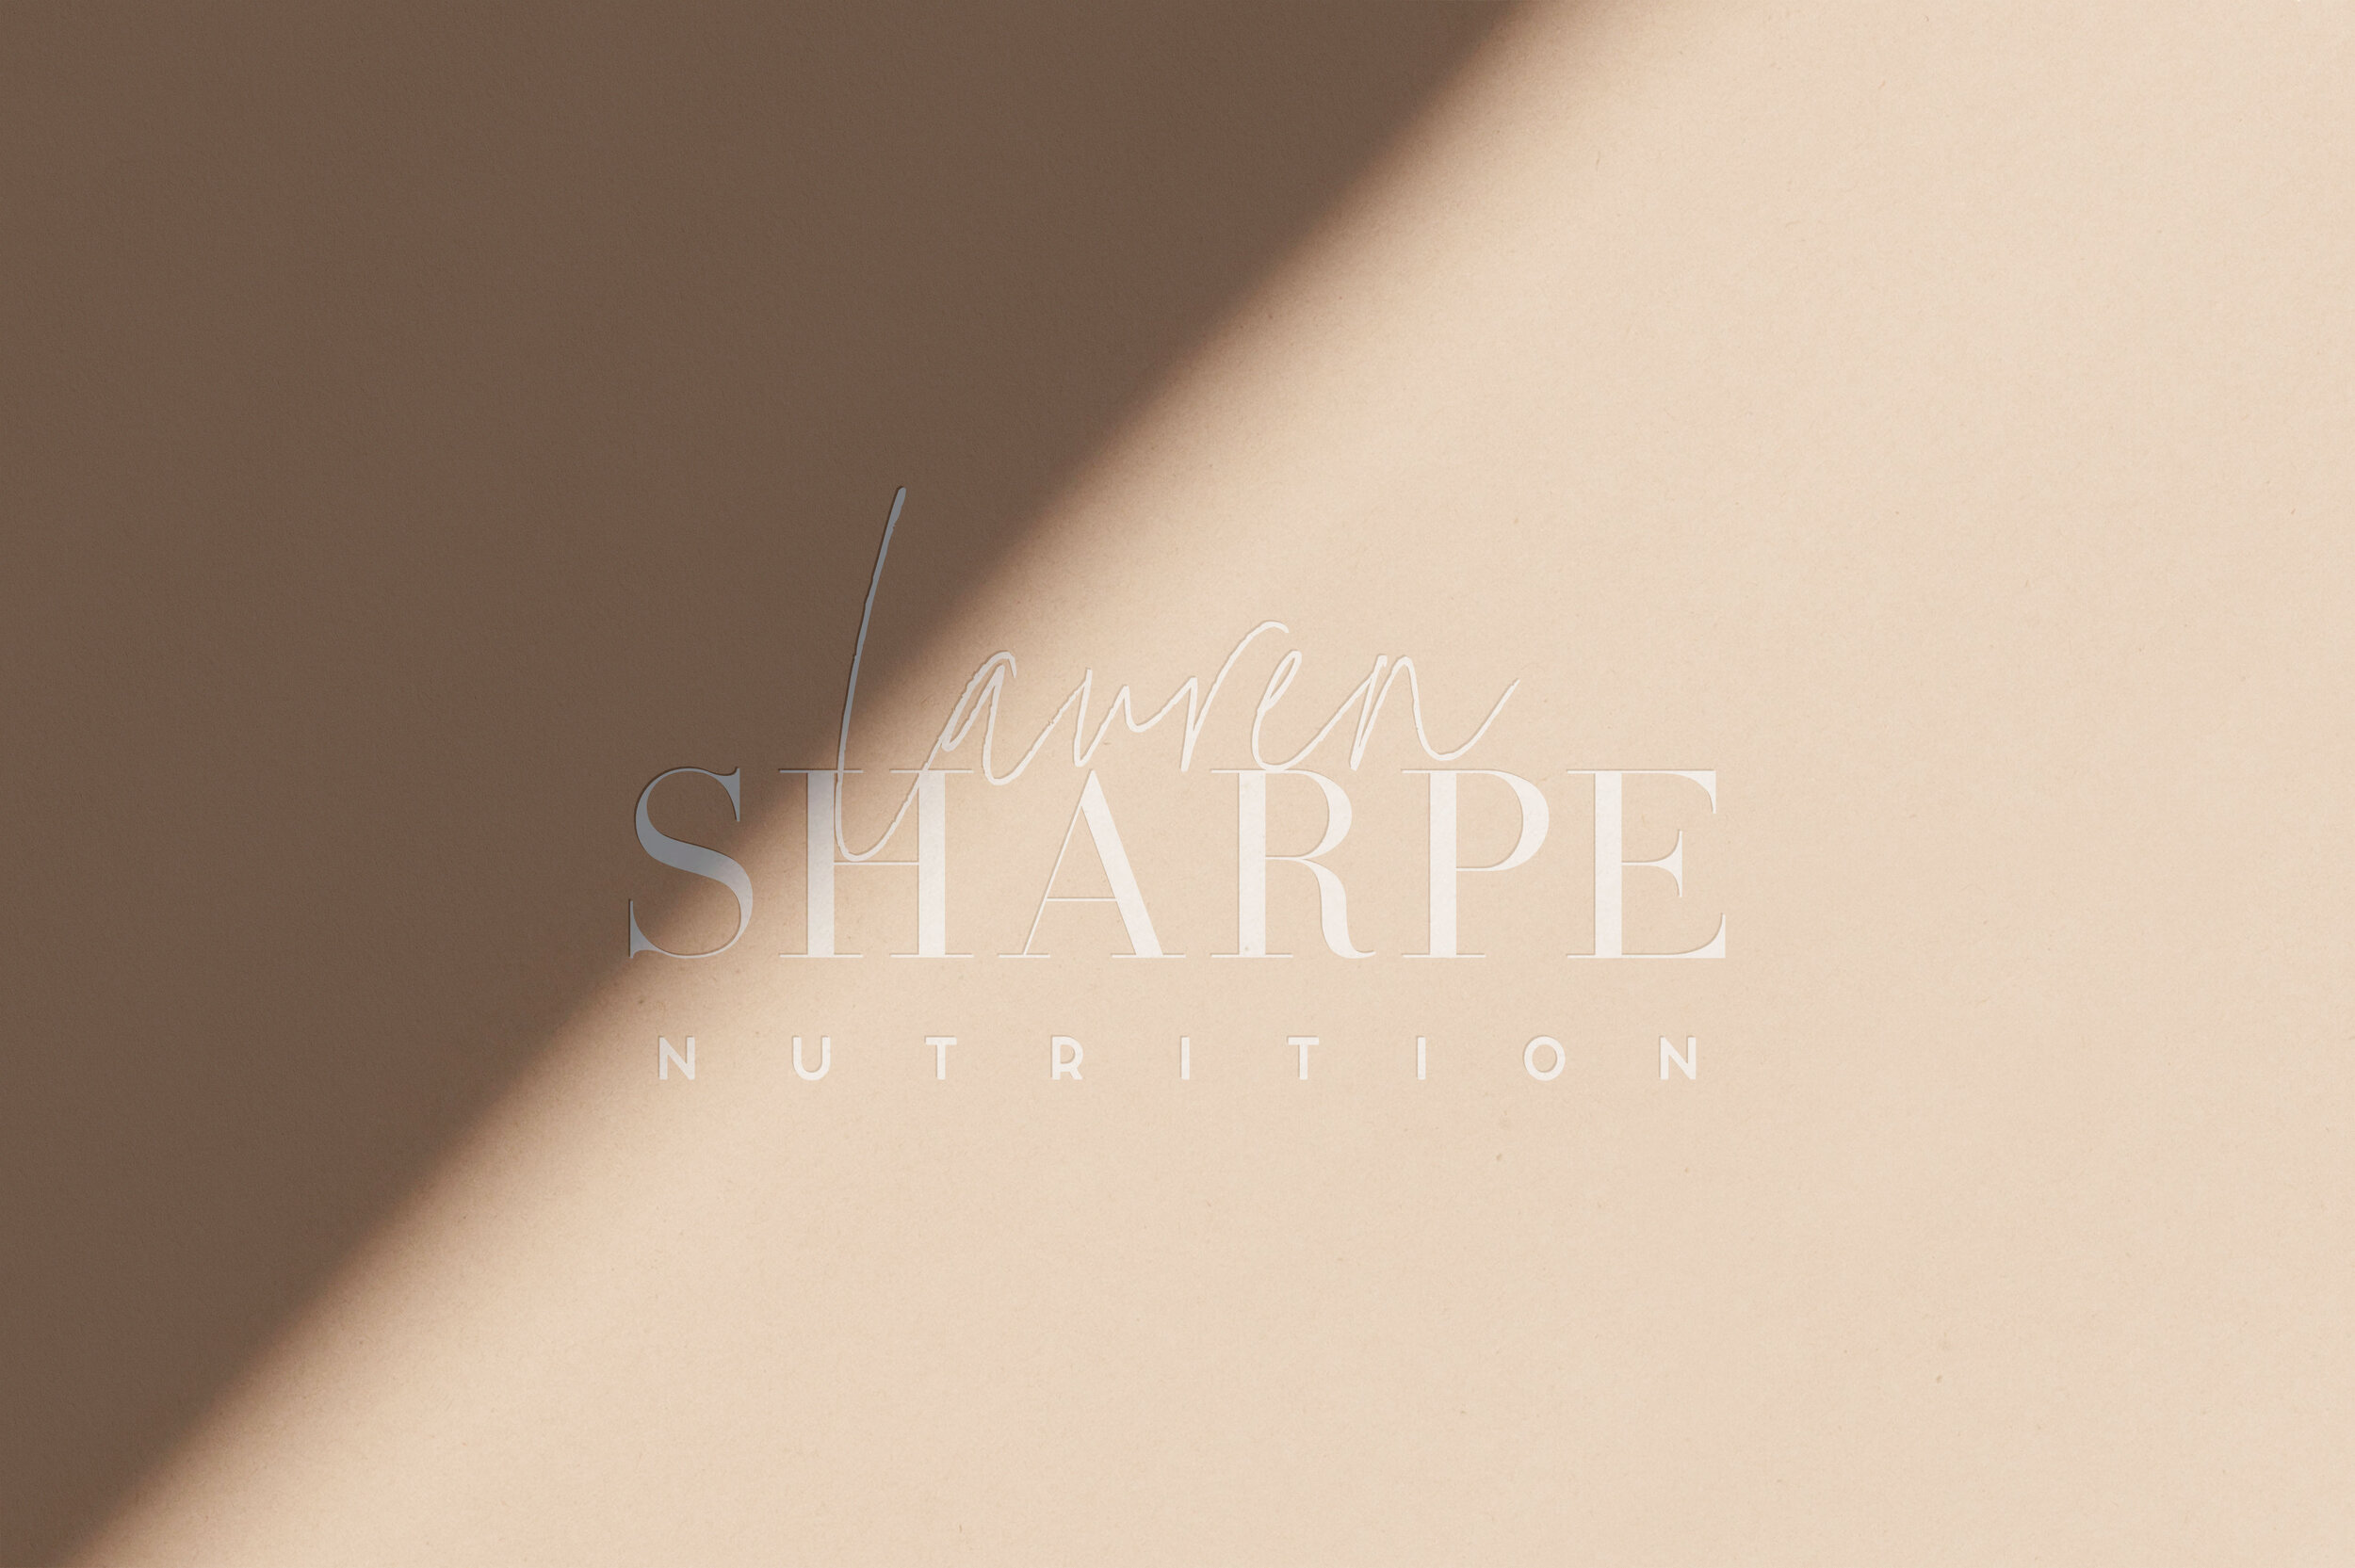 Lauren Sharpe Nutrition Logo By Hello Lovely Living